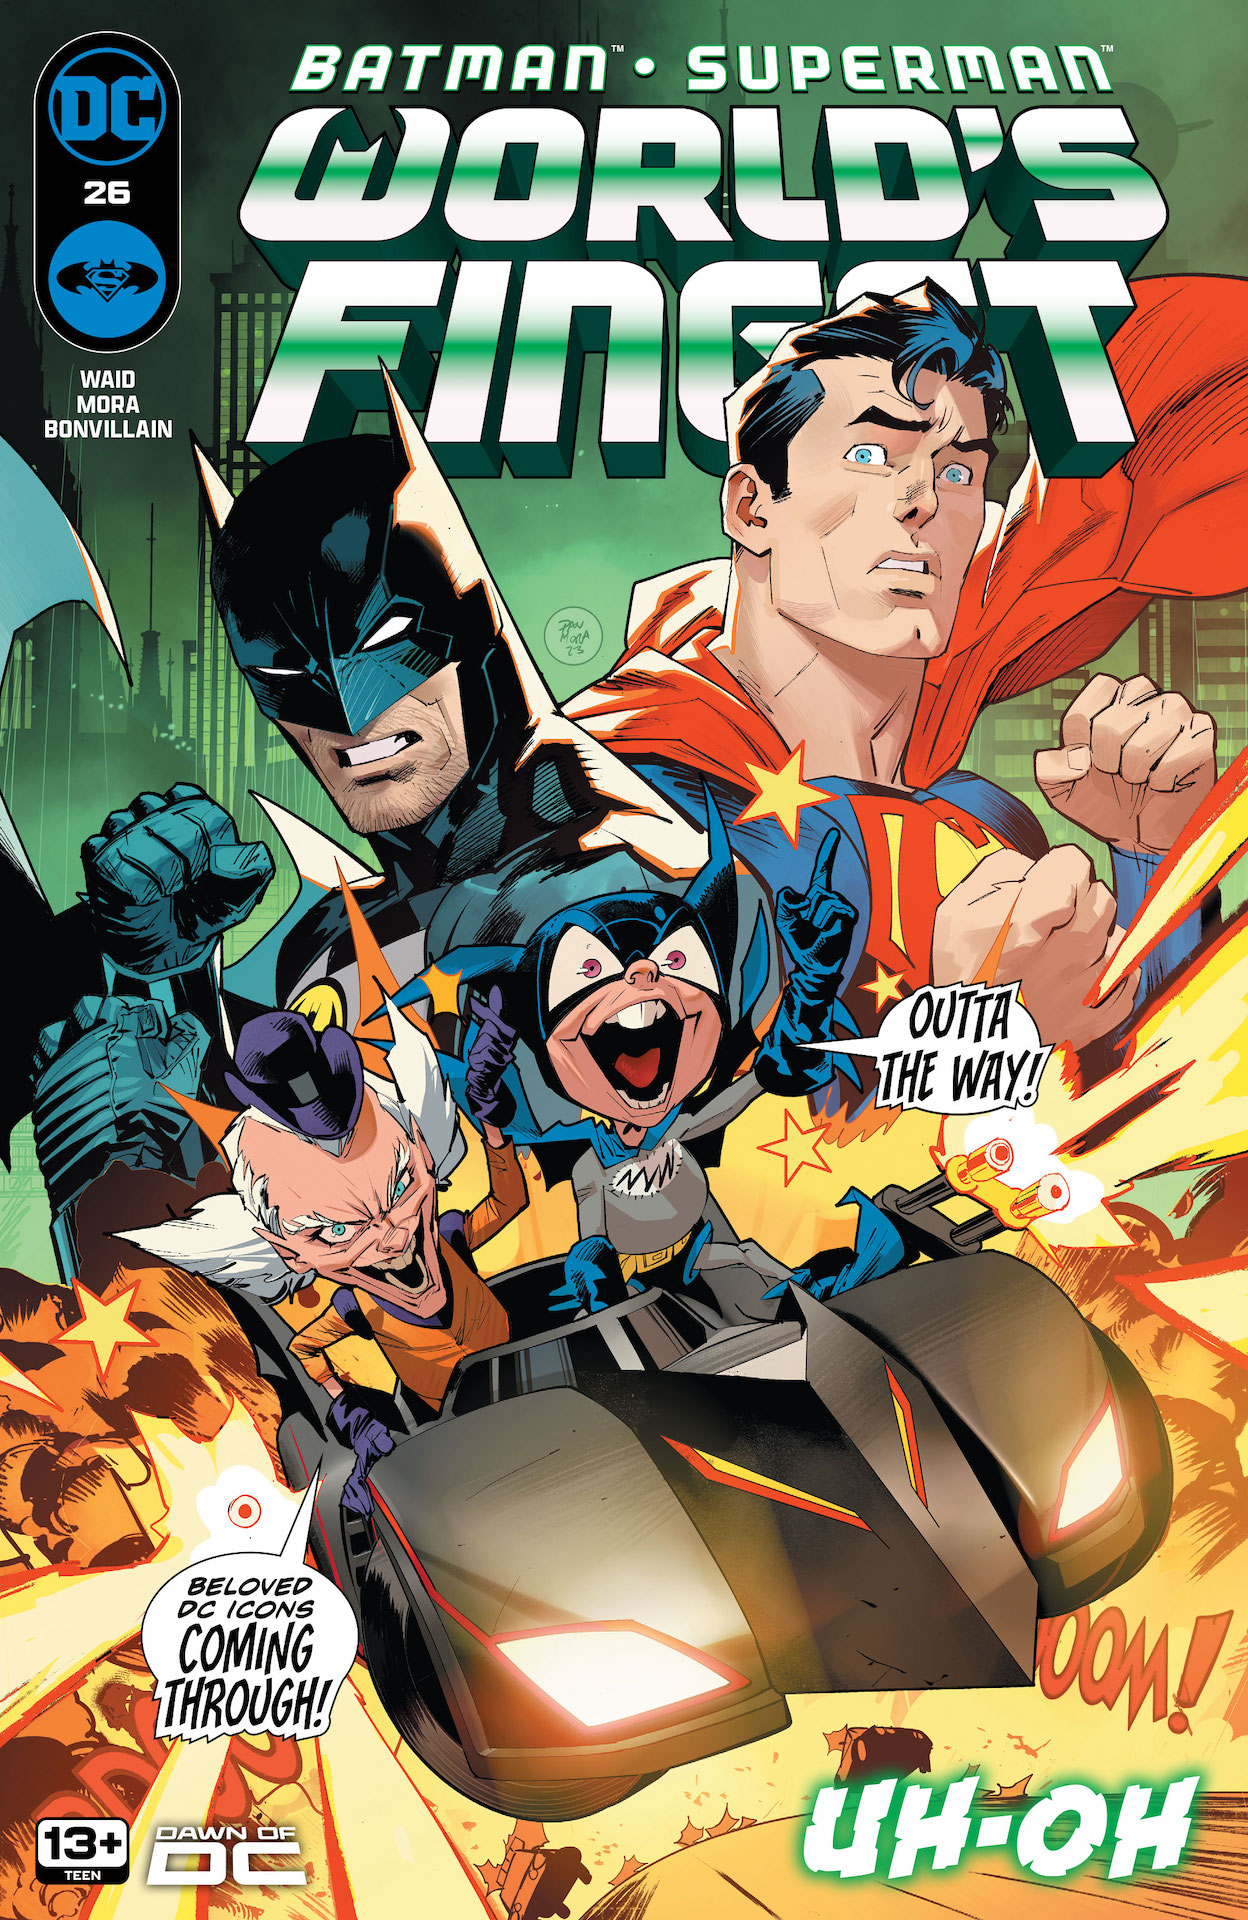 DC Preview: Batman / Superman: World's Finest #26